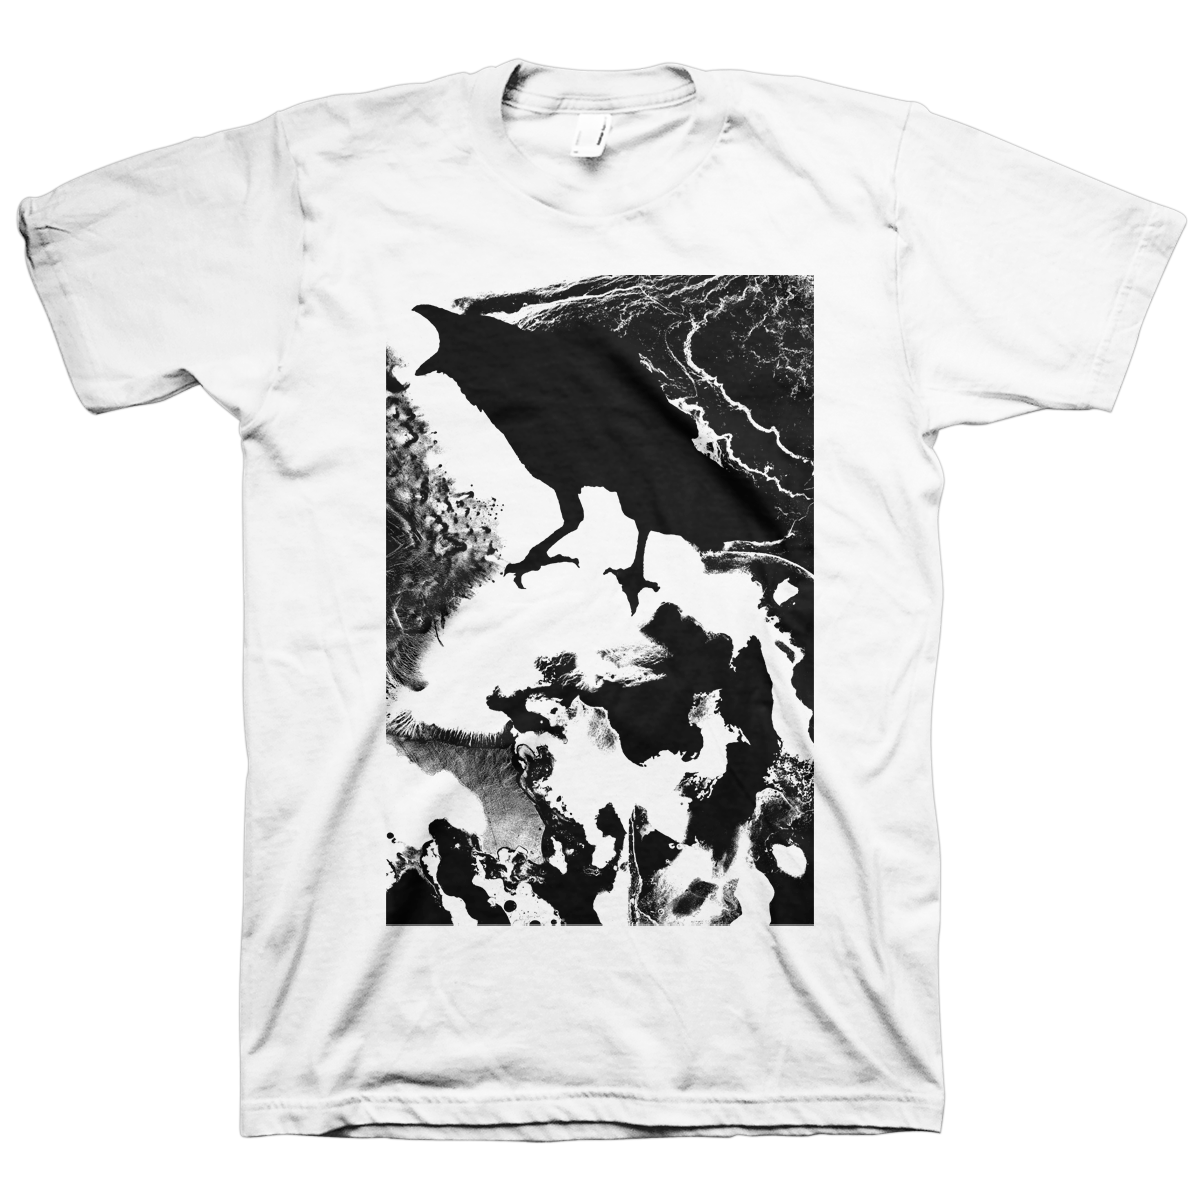 J. Bannon "The Scream" White T-Shirt